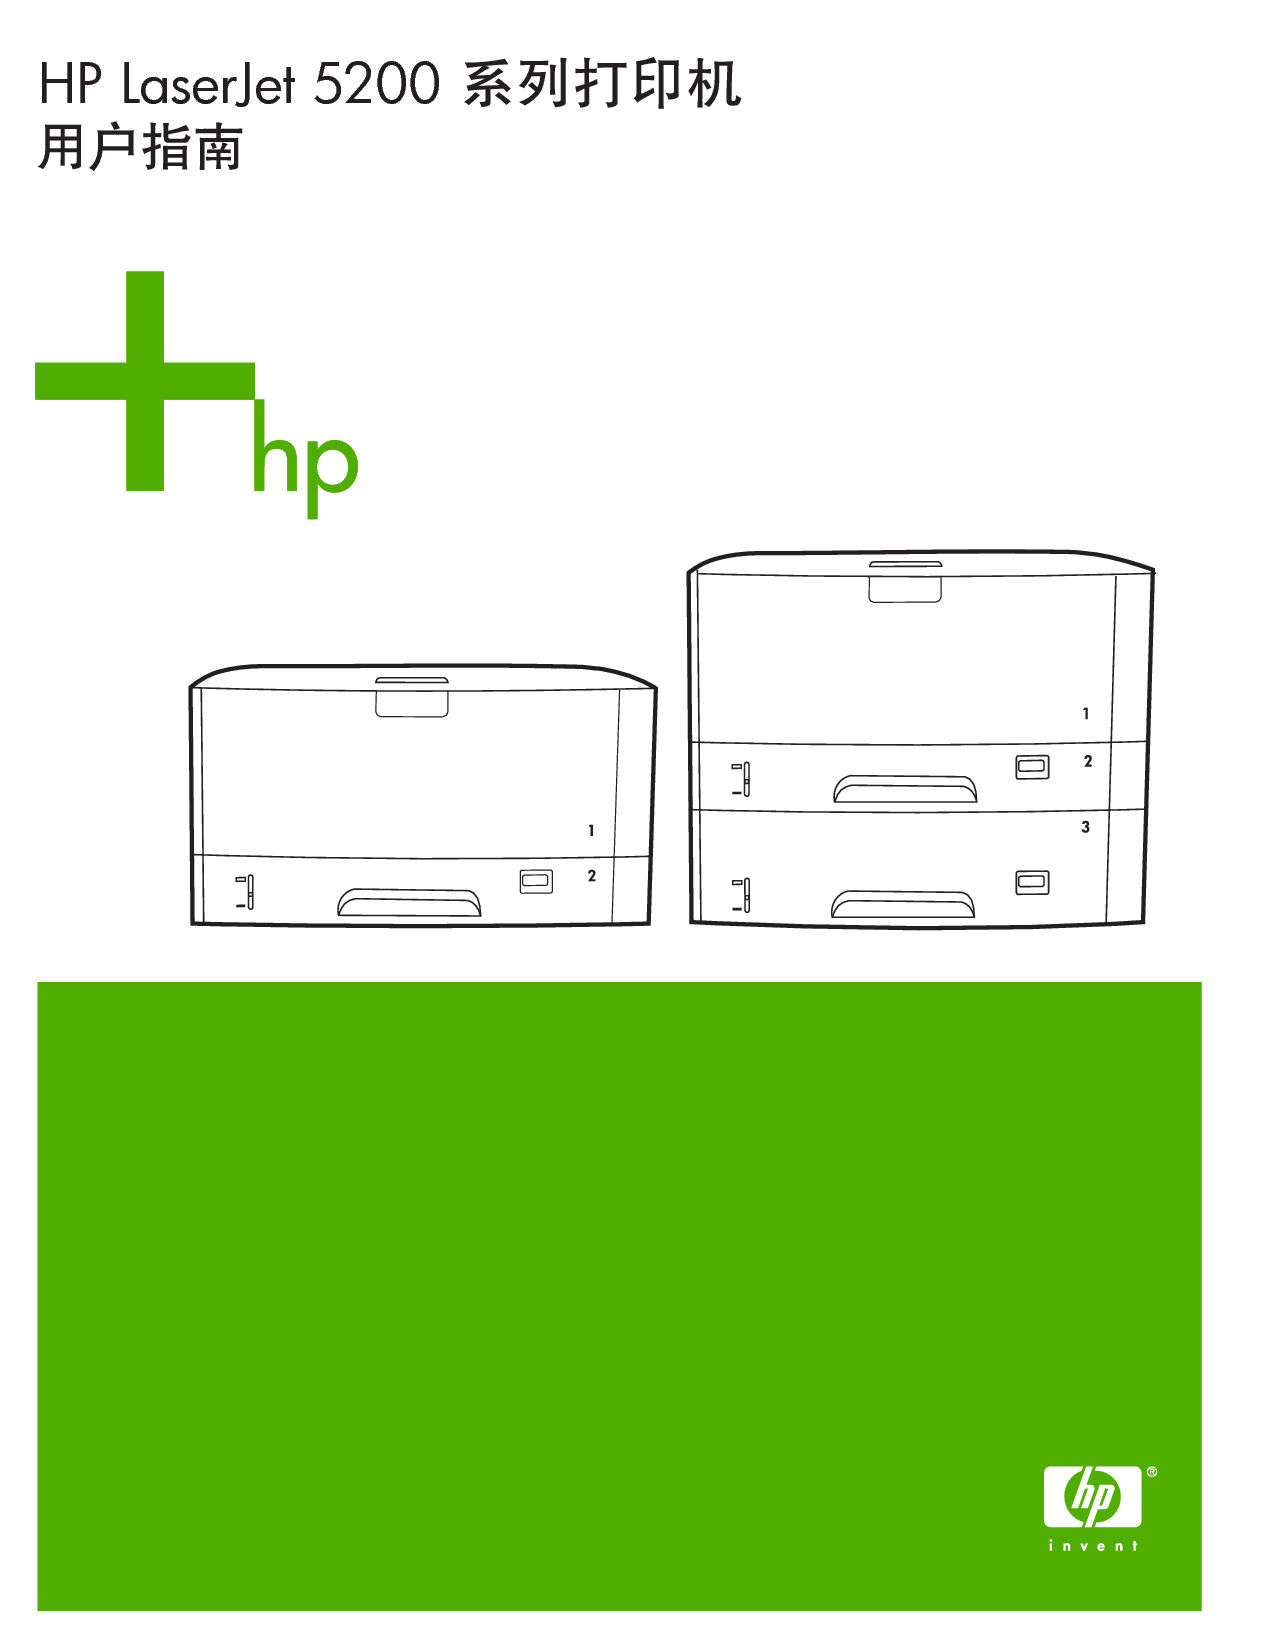 惠普 HP LaserJet 5200 用户指南 封面